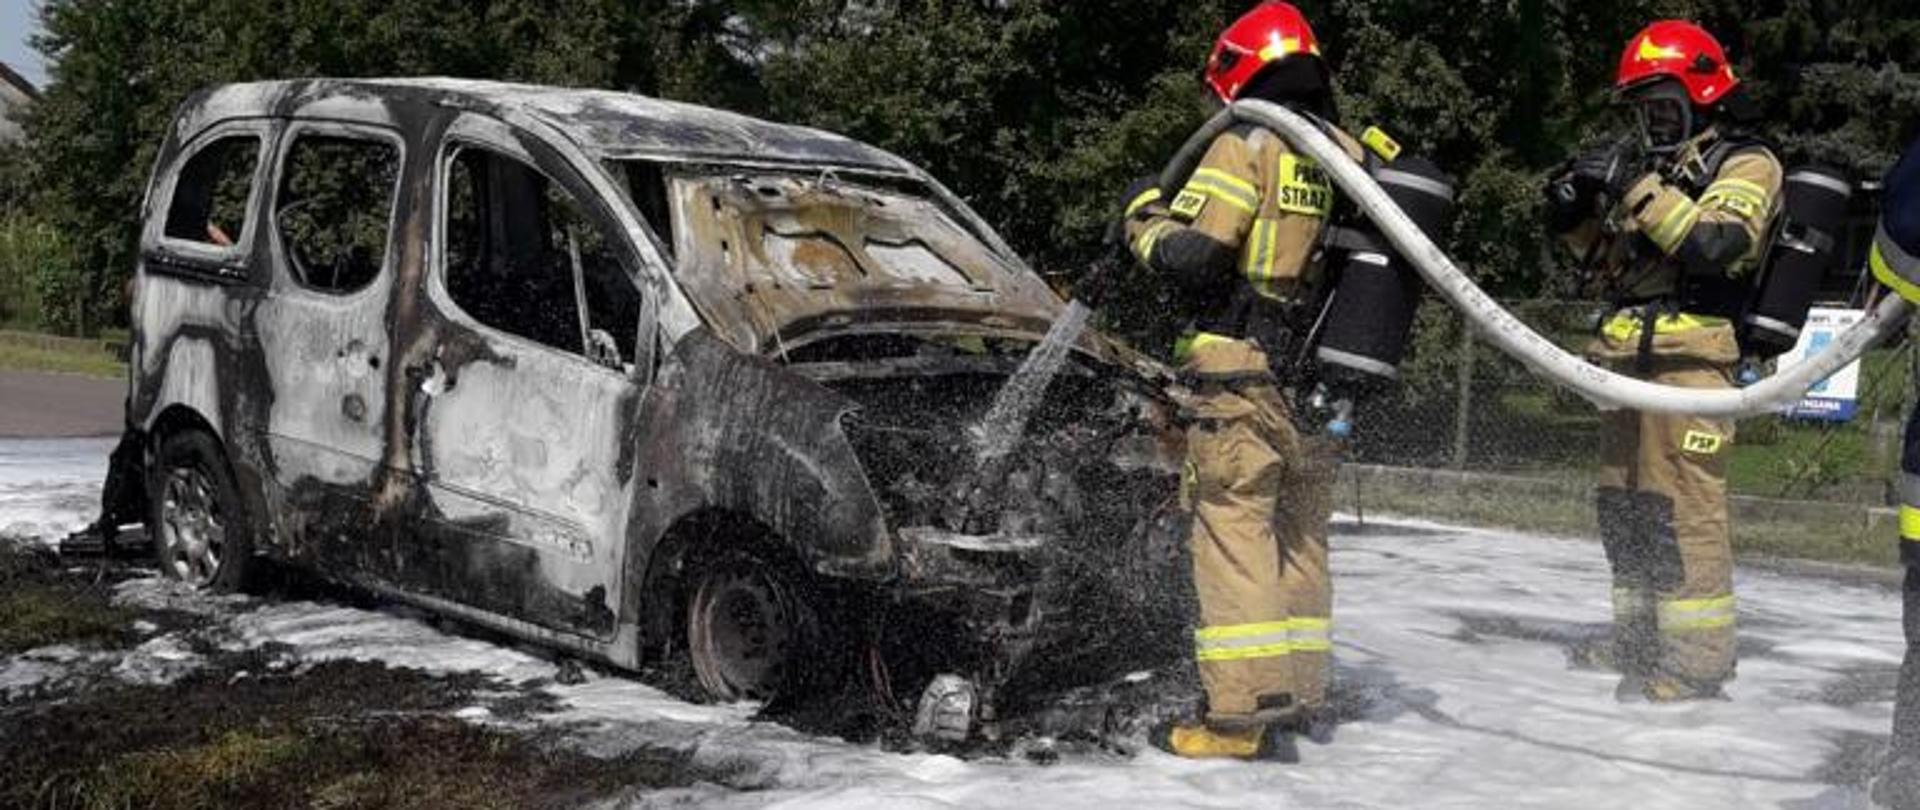 Na zdjęciu widoczni strażacy podające prąd wody, celem dogaszenia samochodu osobowego, samochód całkowicie spalony, widoczna piana gaśnicza.